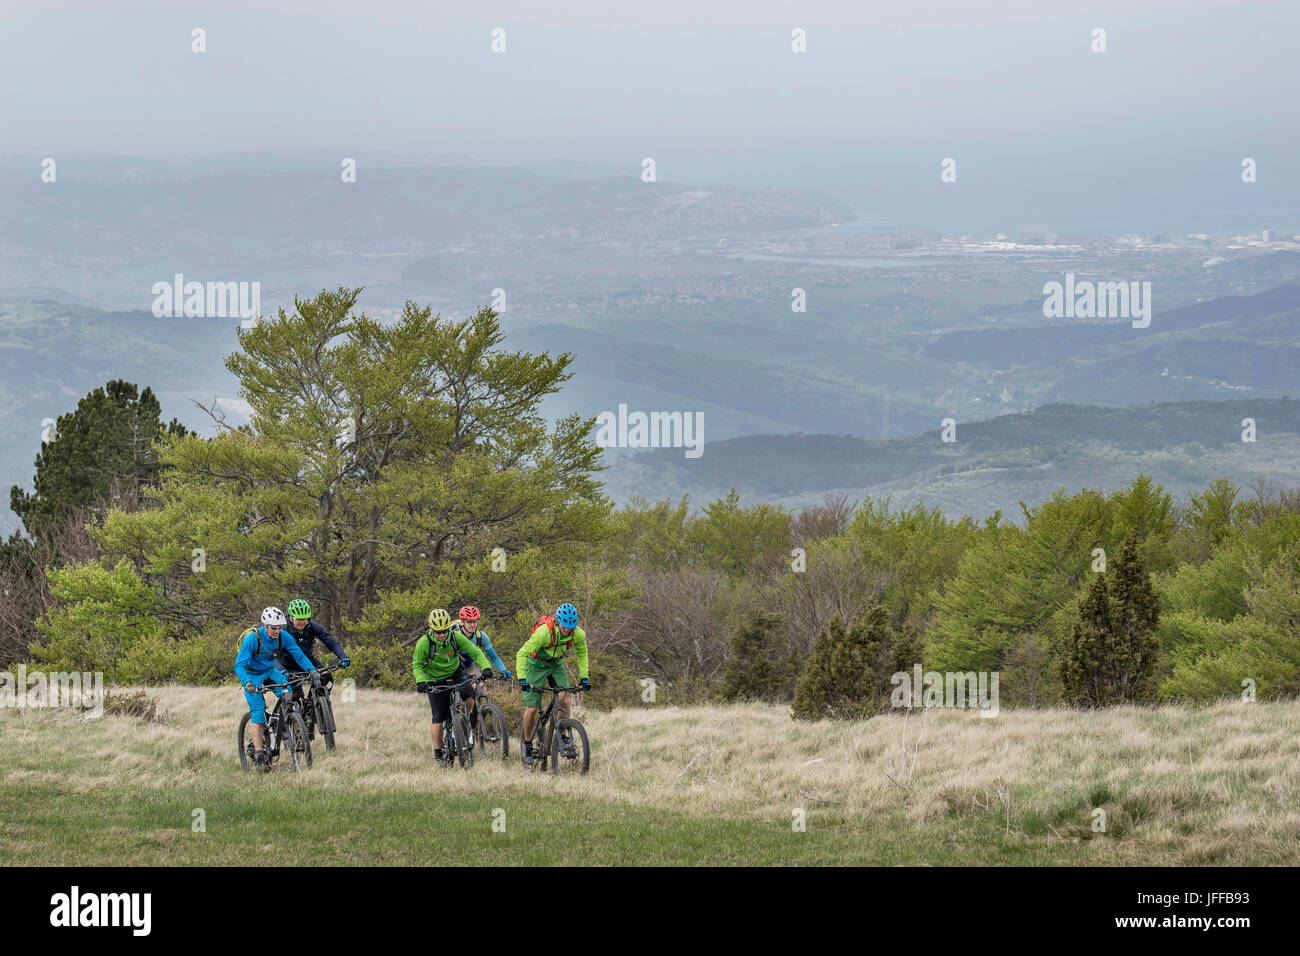 Team von Bikern mit Fahrrad in Rasen am Berg Stockfoto